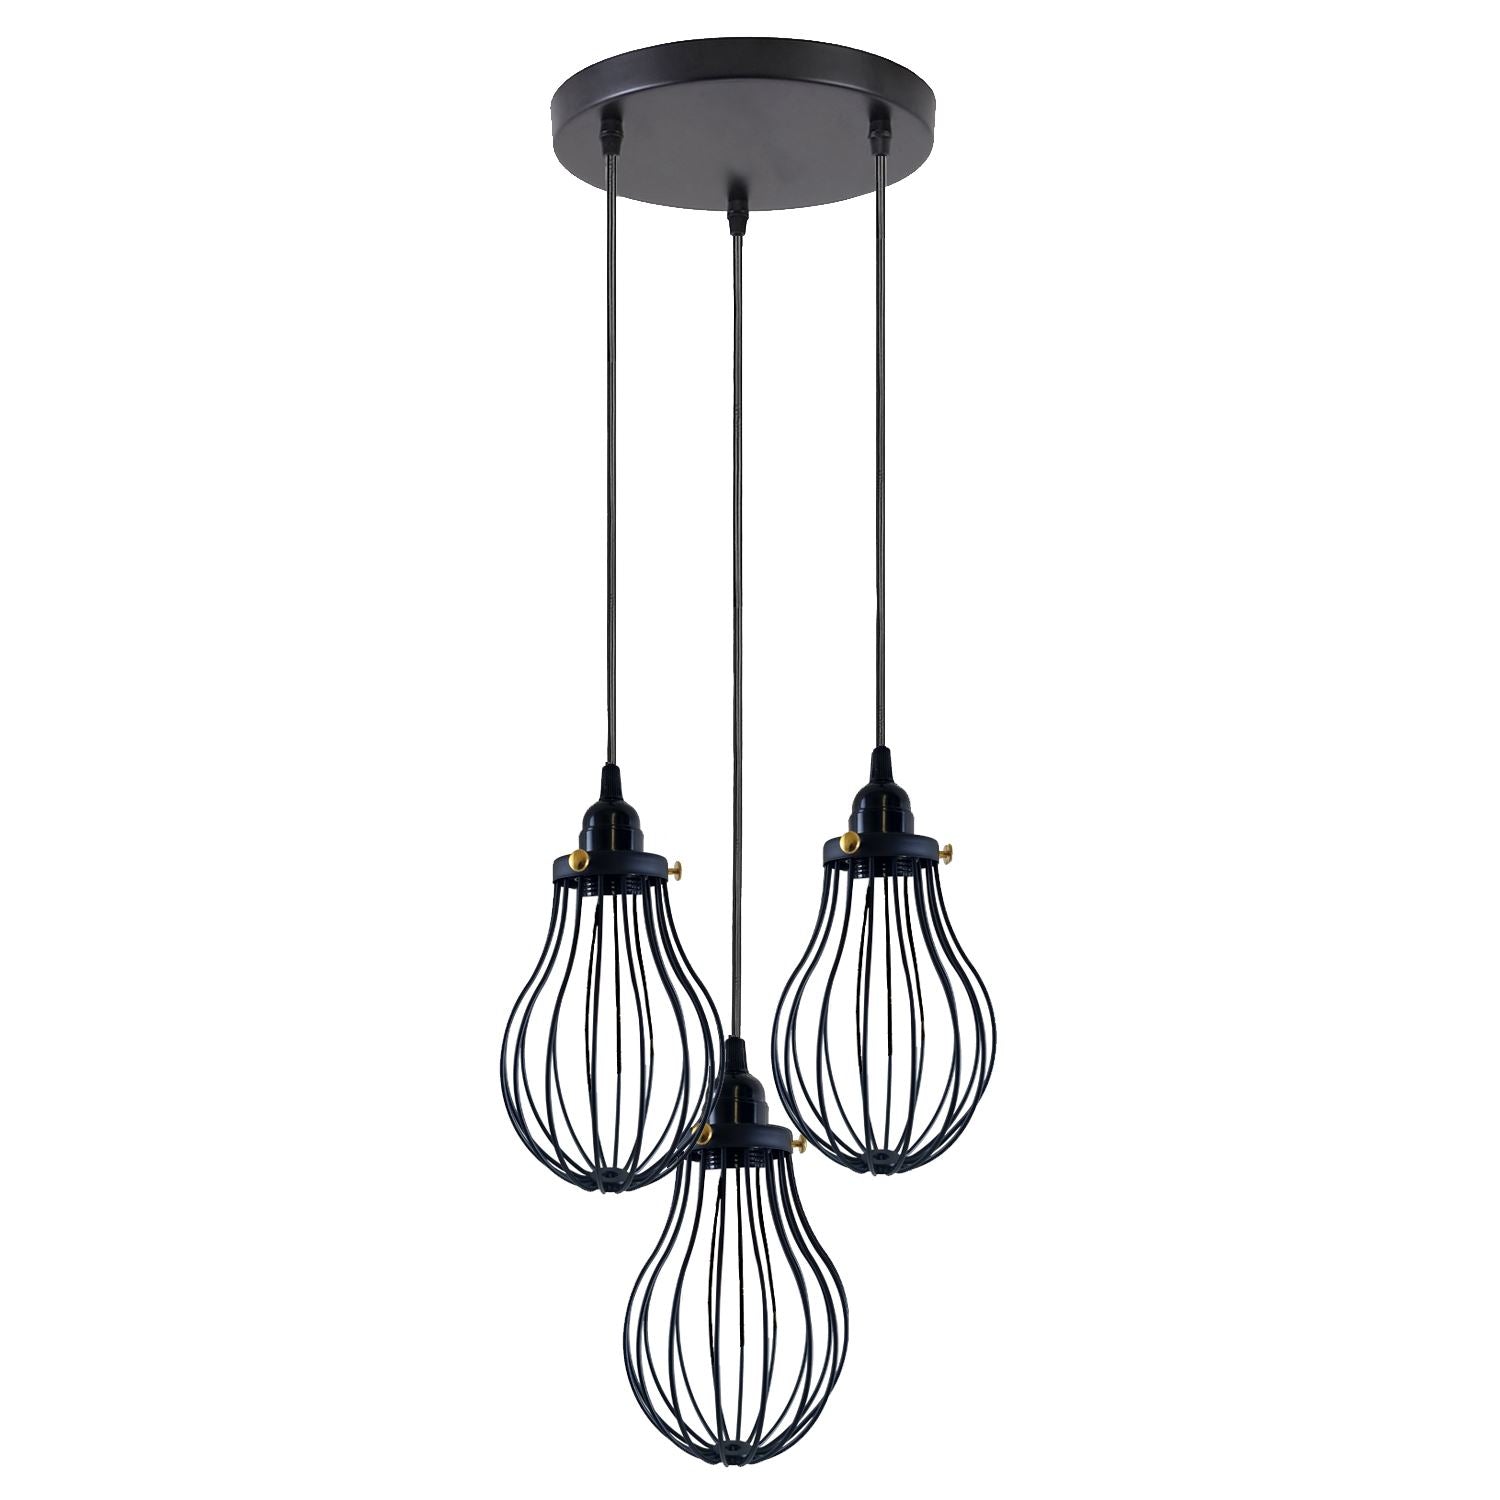 Retro Industrial Black Indoor Hanging Adjustable Pendant Light Big Vase Cage Ceiling Chandelier~3398 - LEDSone UK Ltd